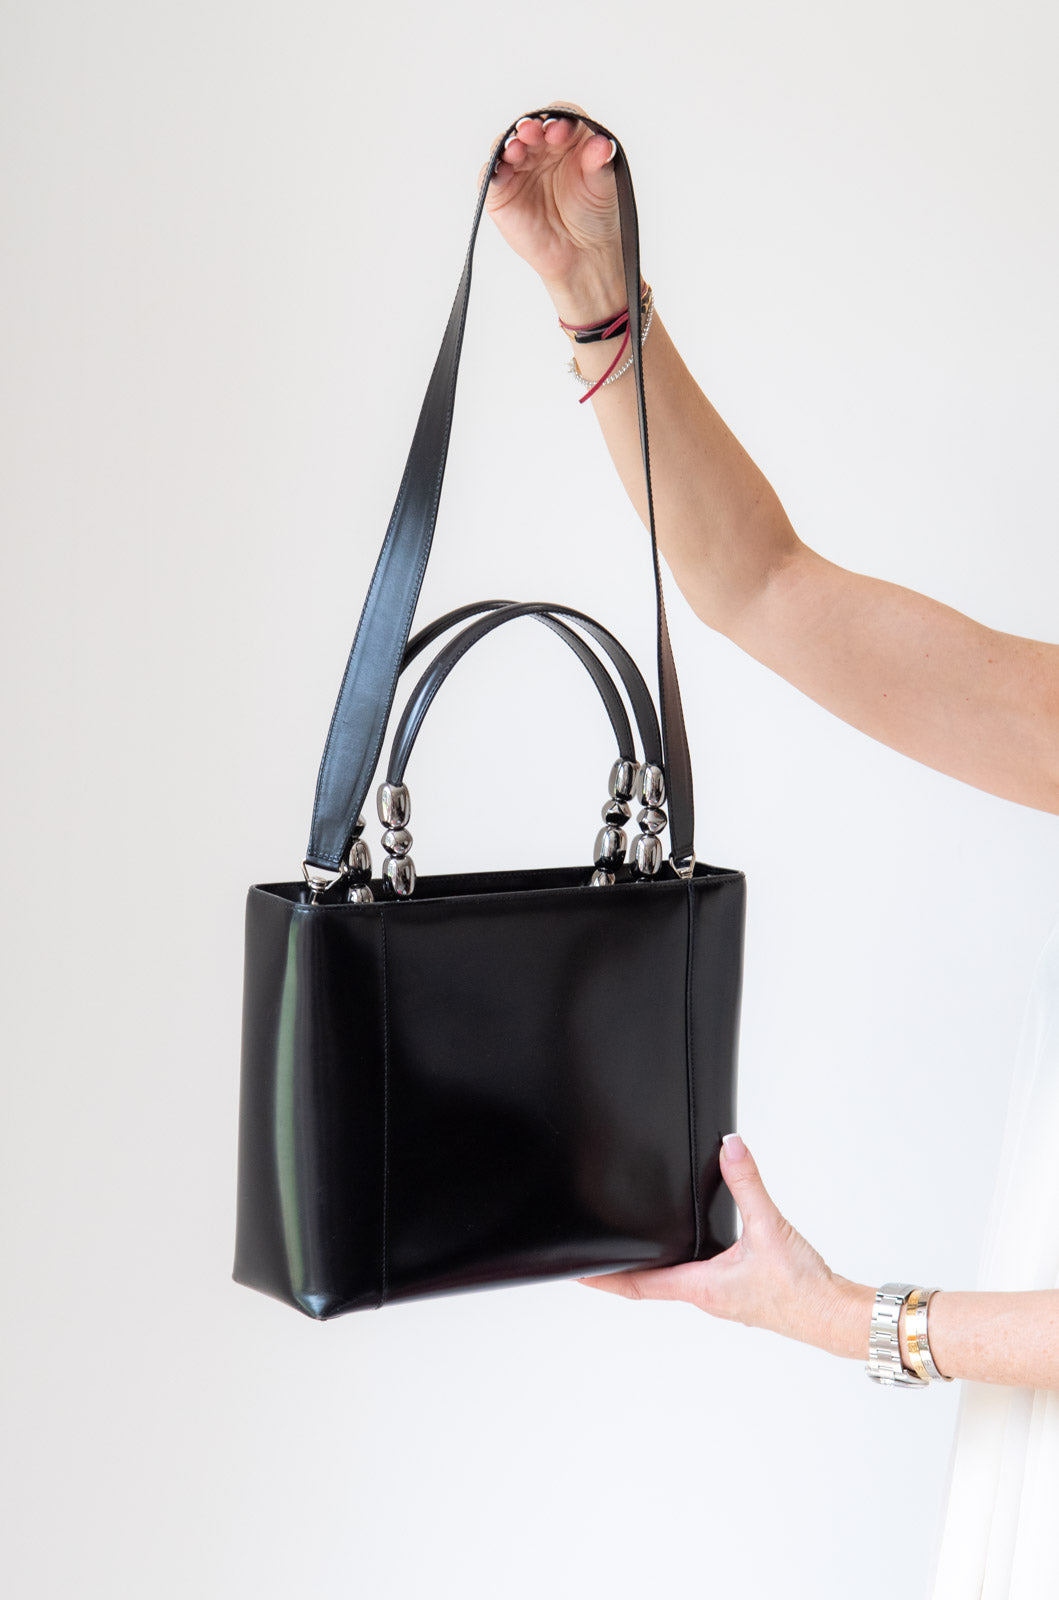 Dior Black Leather Tote Bag - EVEYSPRELOVED